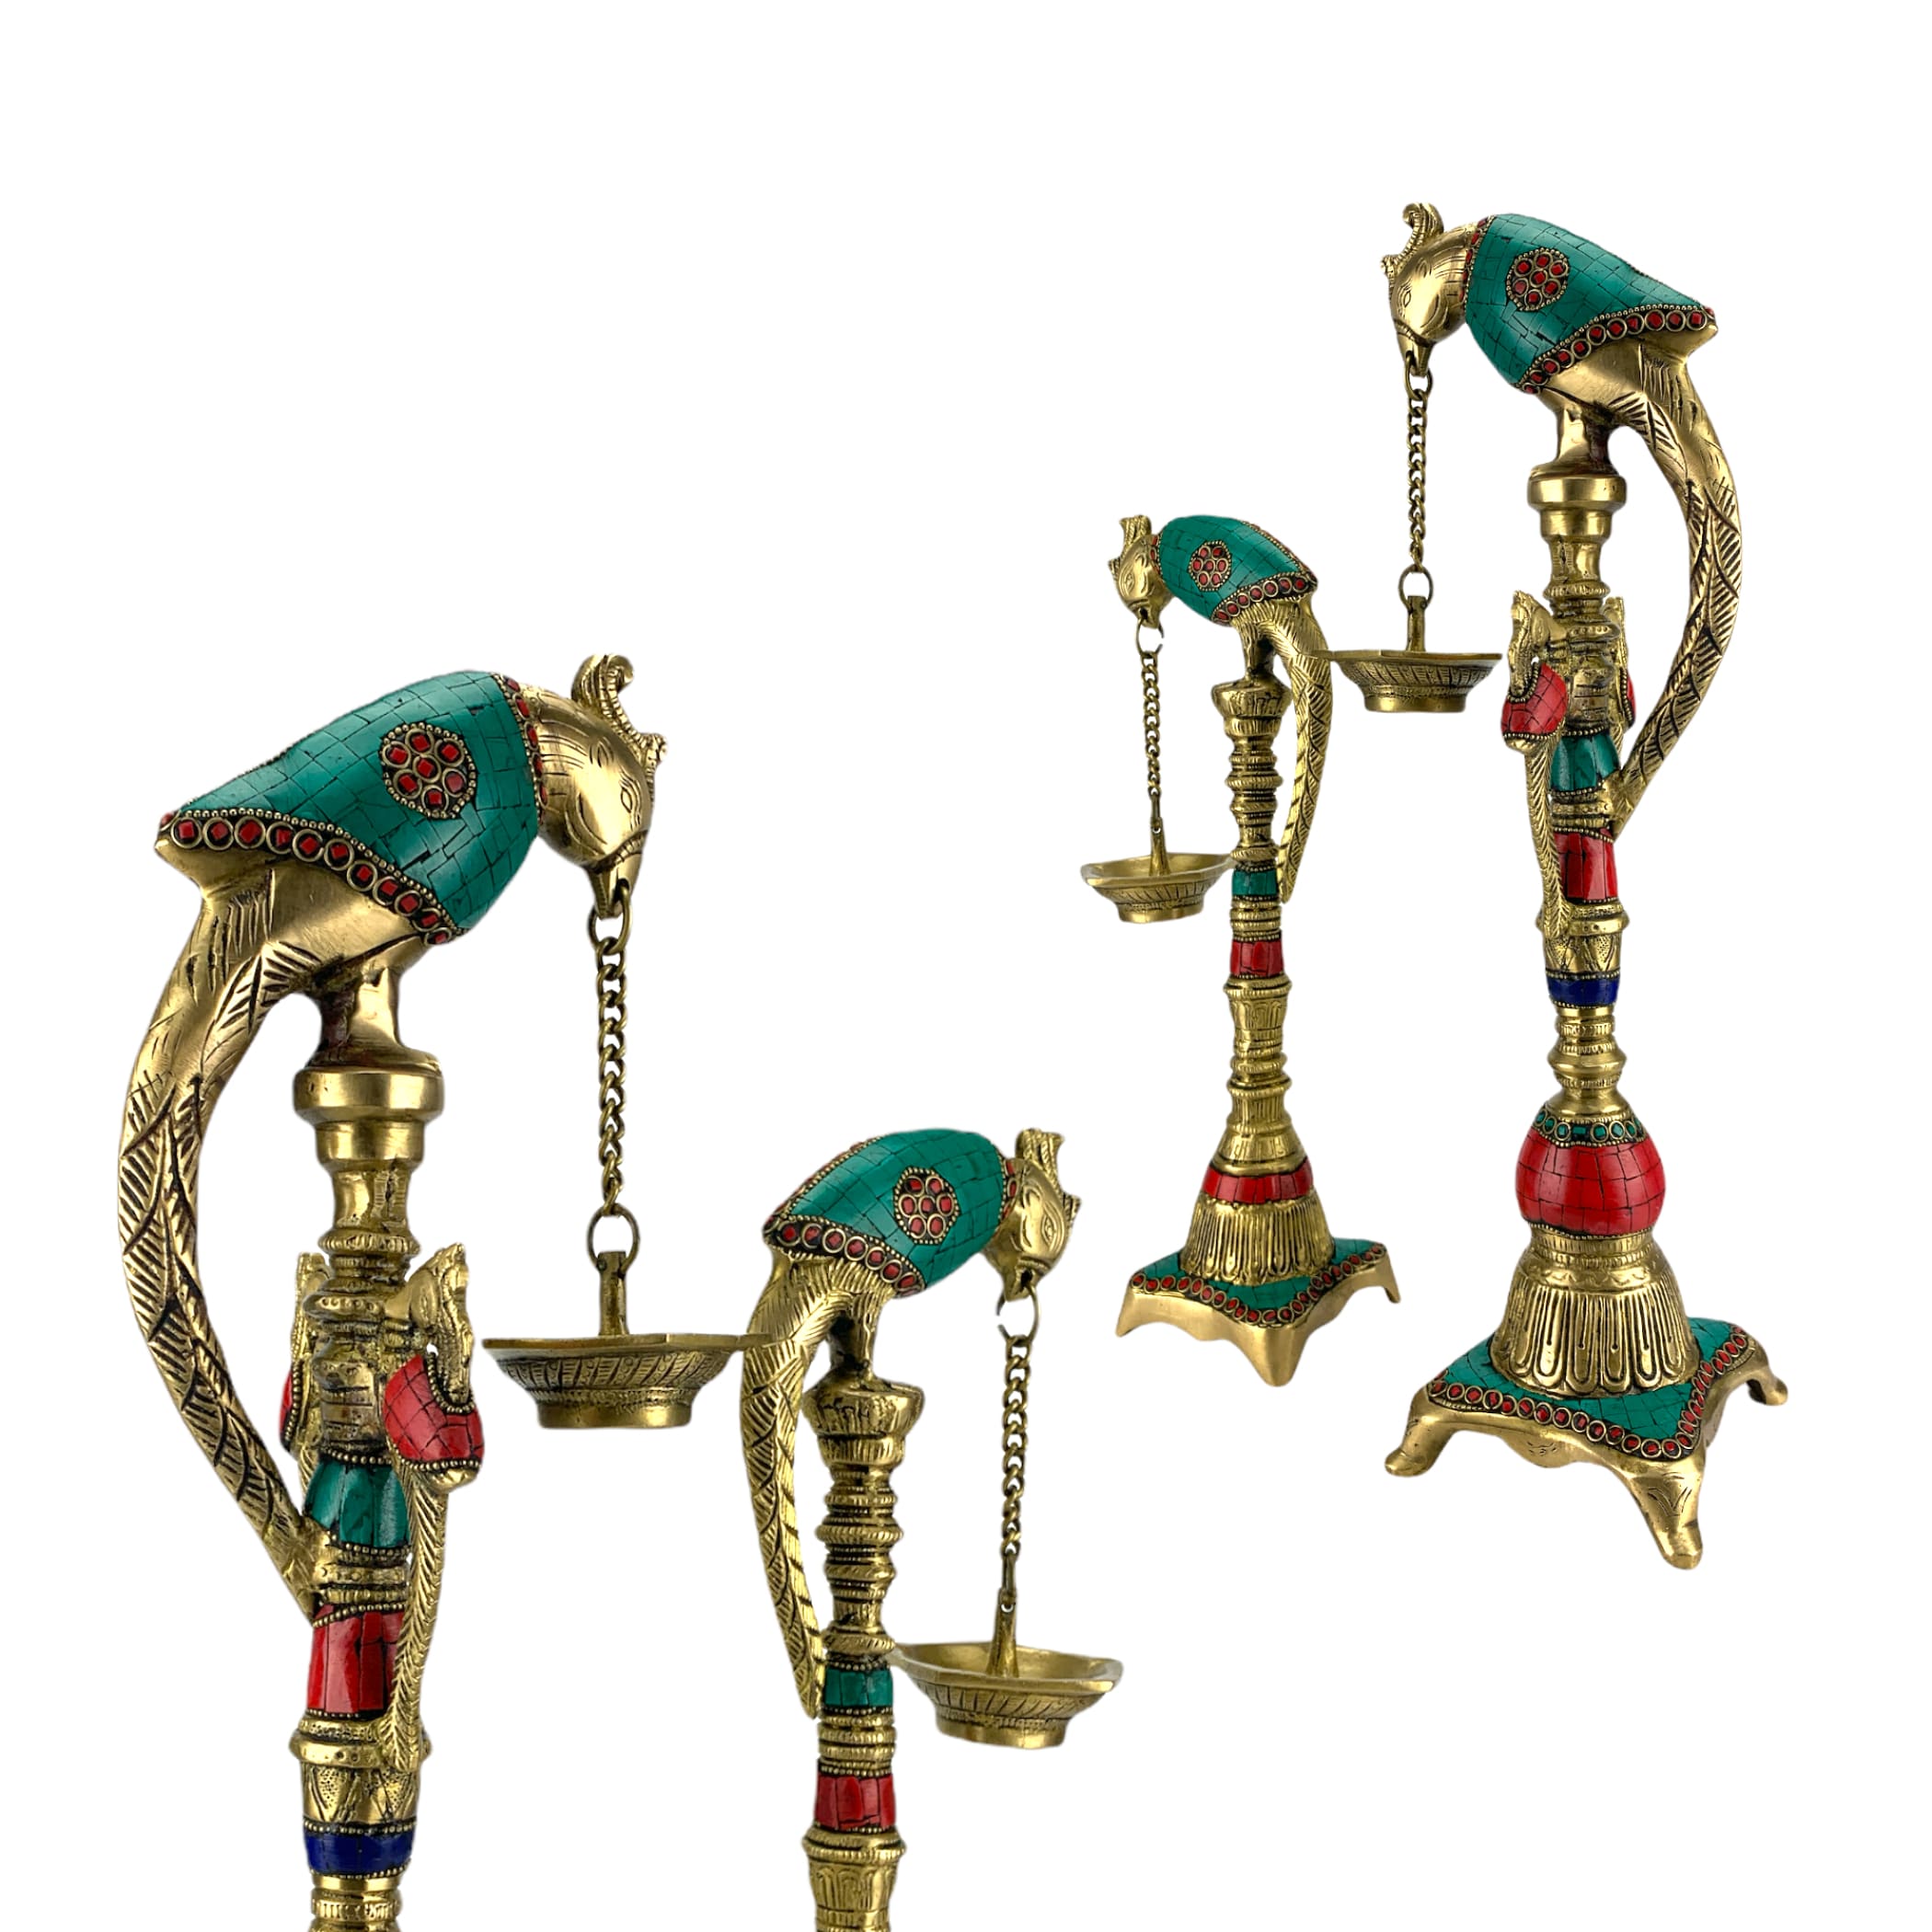 Parrot brass oil tall diya samai diwali decor lamp altar